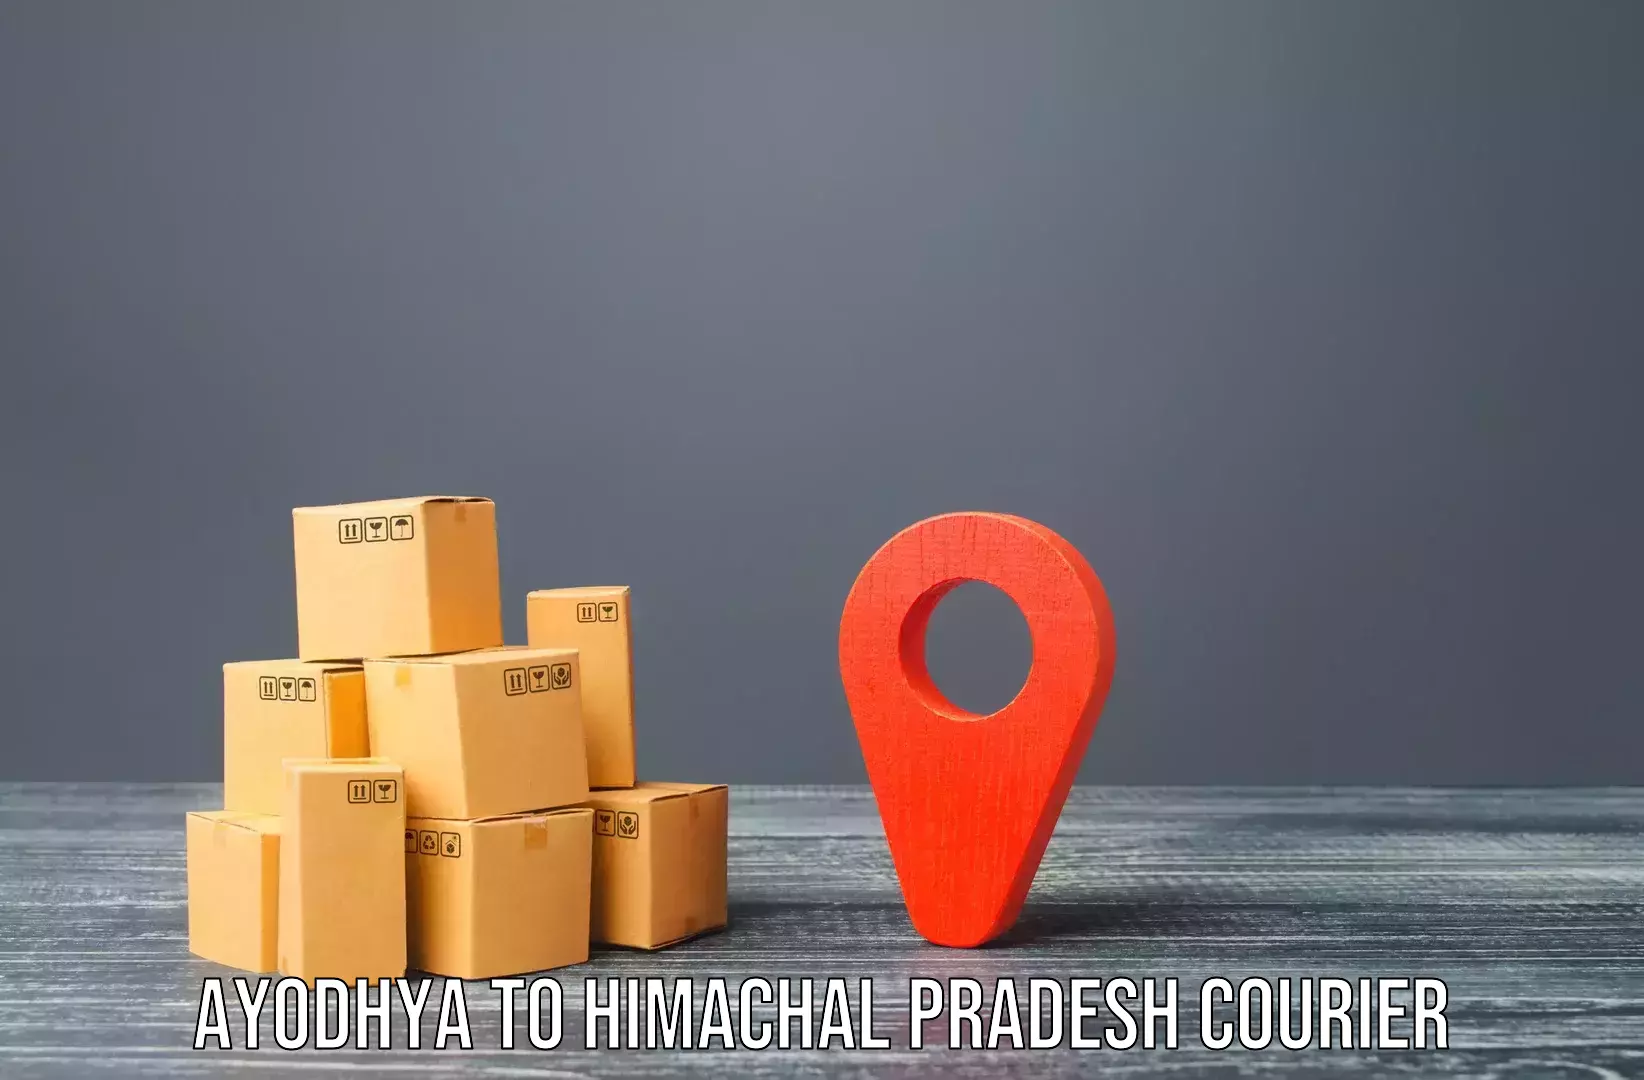 Furniture moving experts Ayodhya to Kachhera